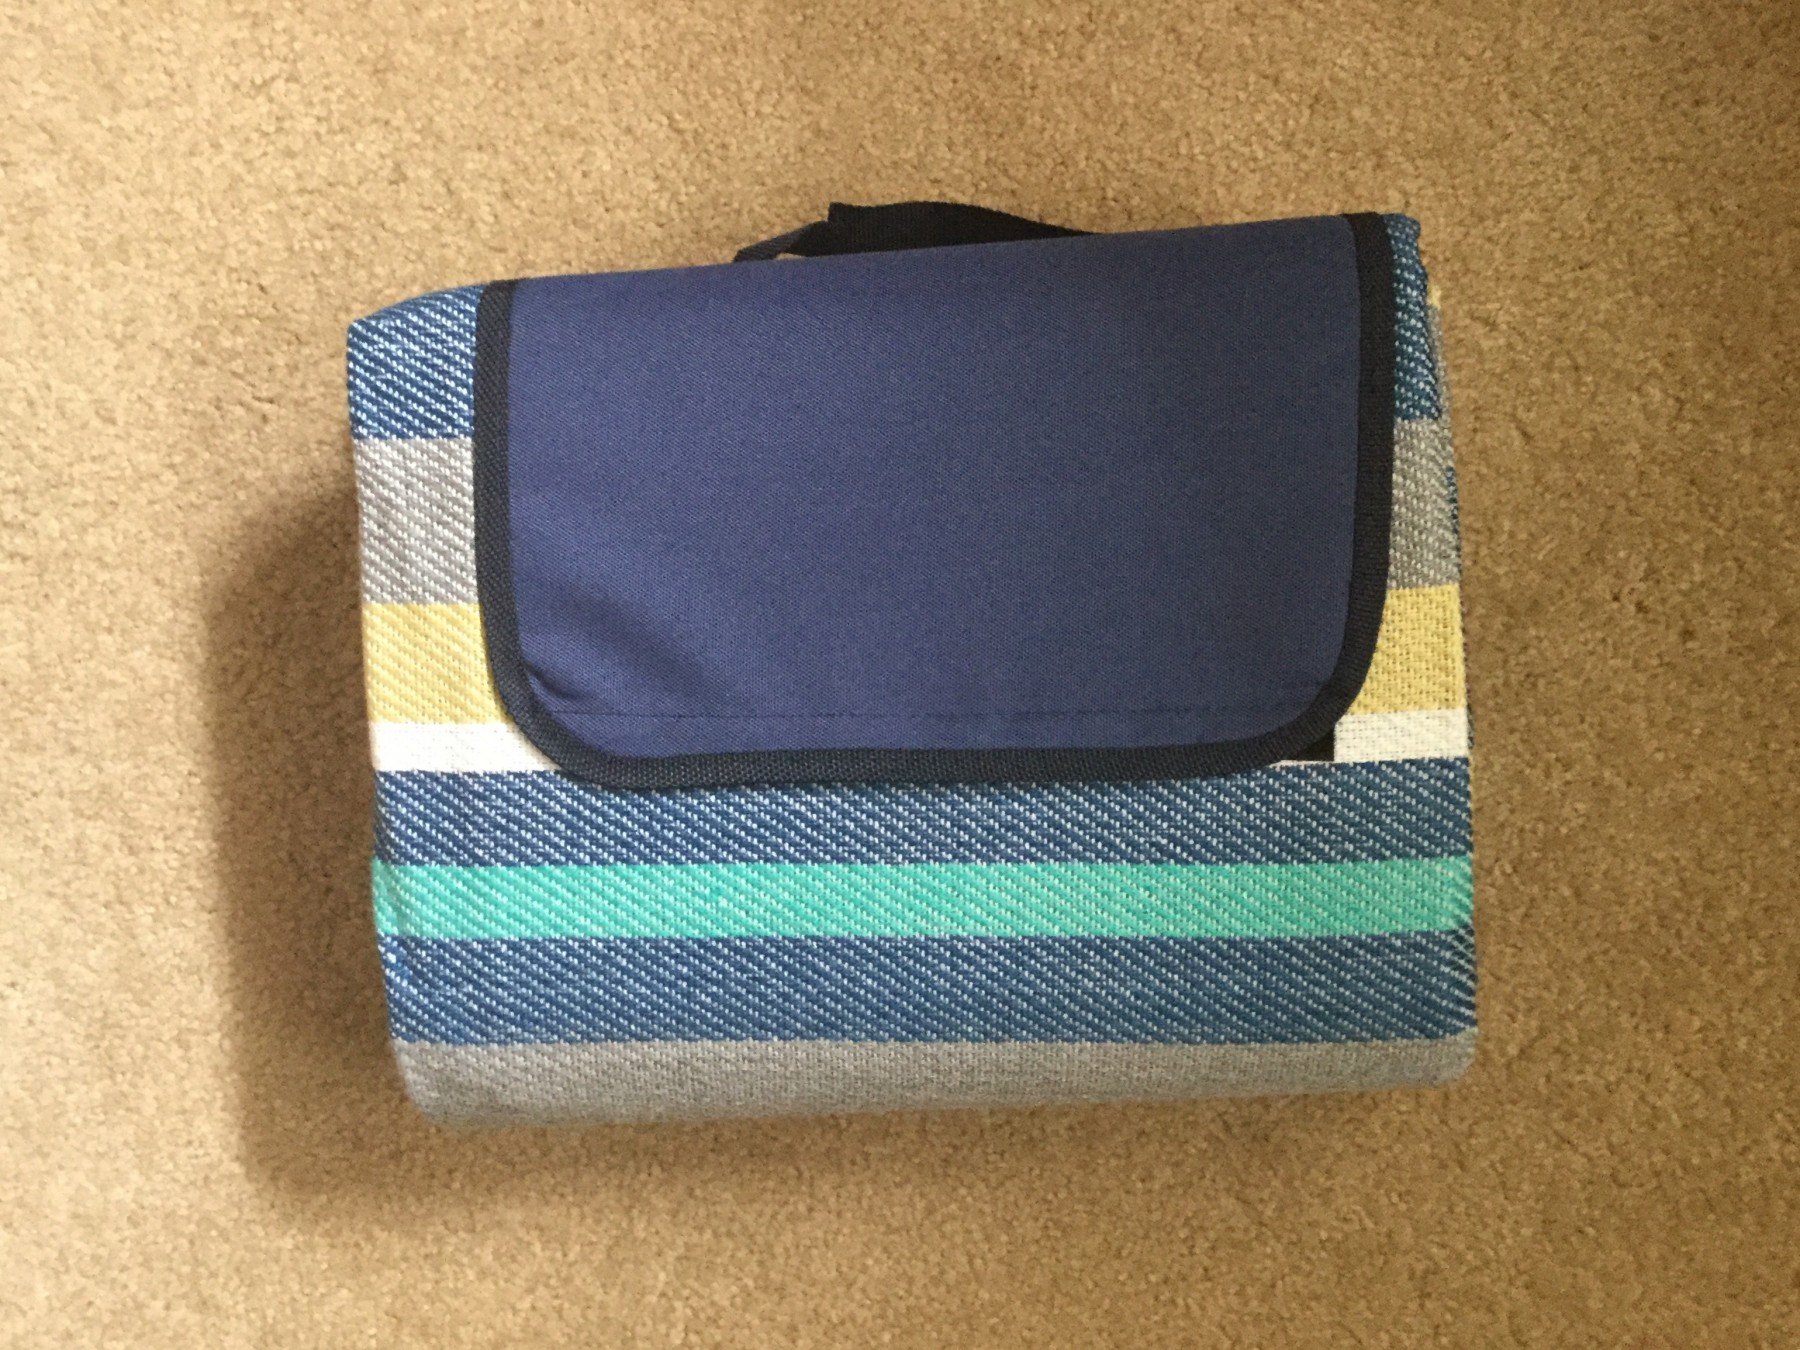 Convenient carry picnic blanket